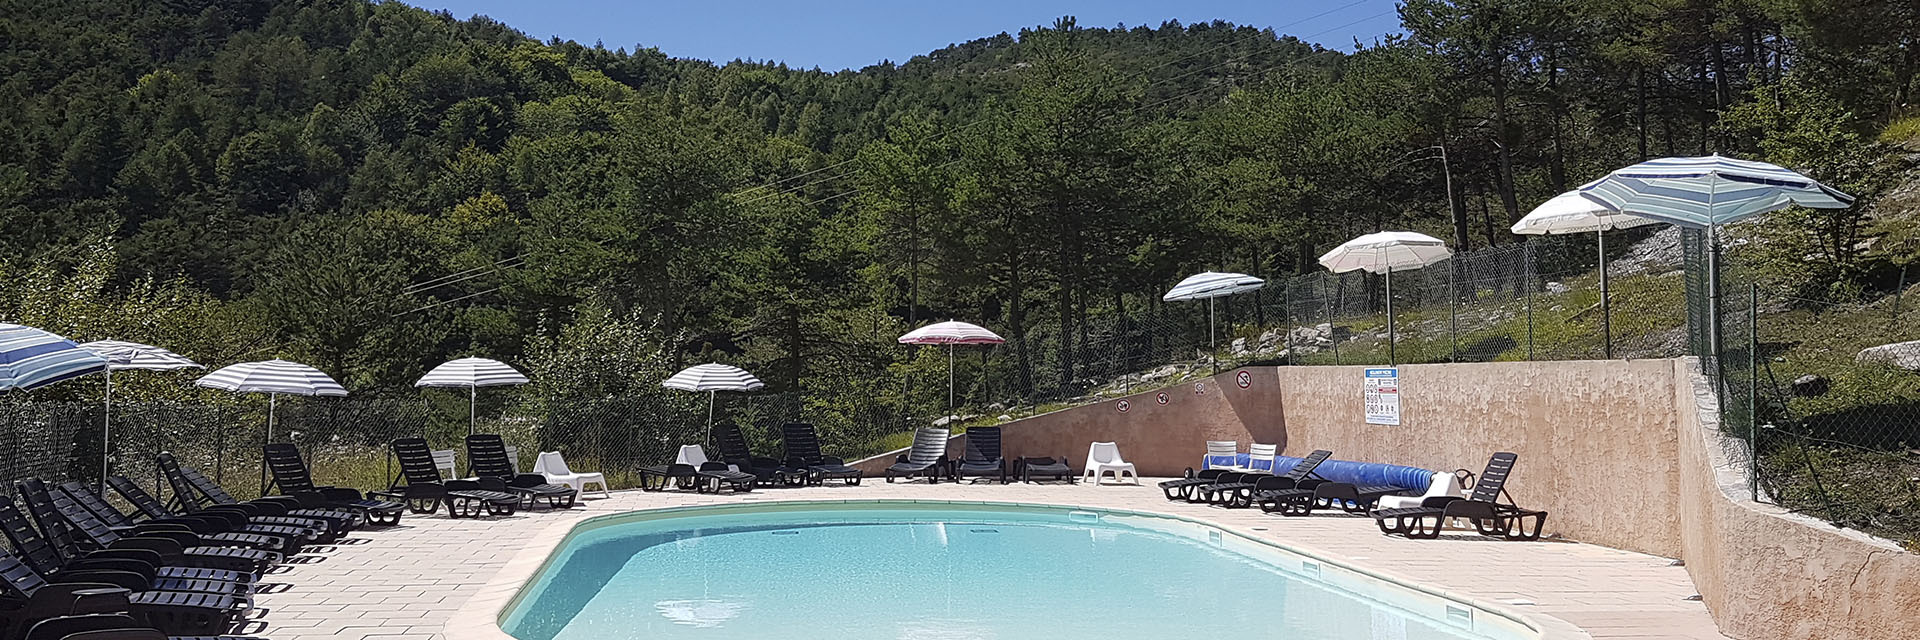 Azur et Neige - Village Vacances Cap France